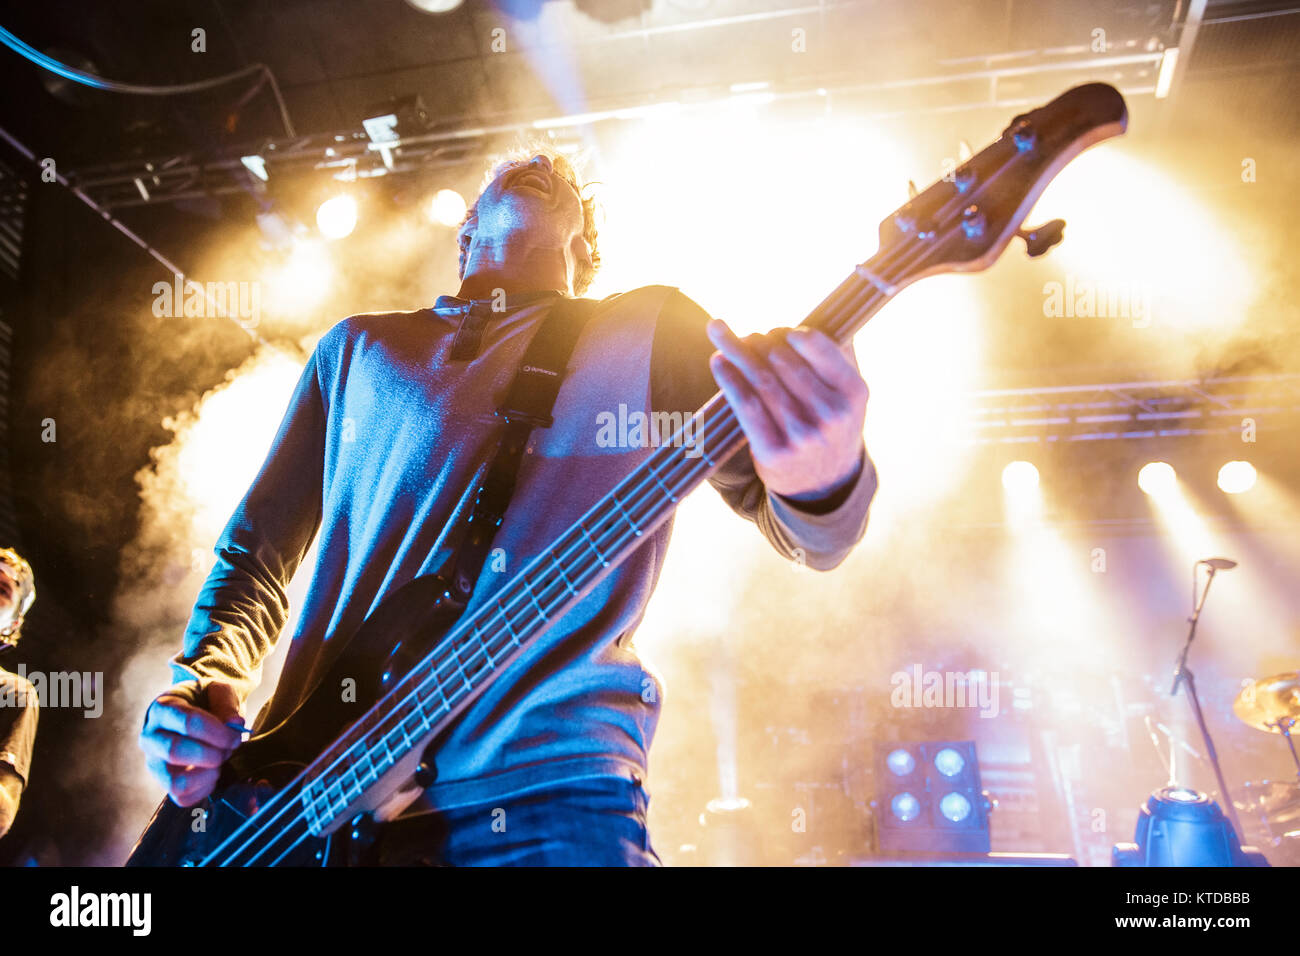 La Australian metalcore band Parkway Drive esegue un concerto dal vivo a Amager Bio in Copenhagen. Qui bass player Jia O Connor è visto dal vivo sul palco. Danimarca, 10/12 2014. Foto Stock